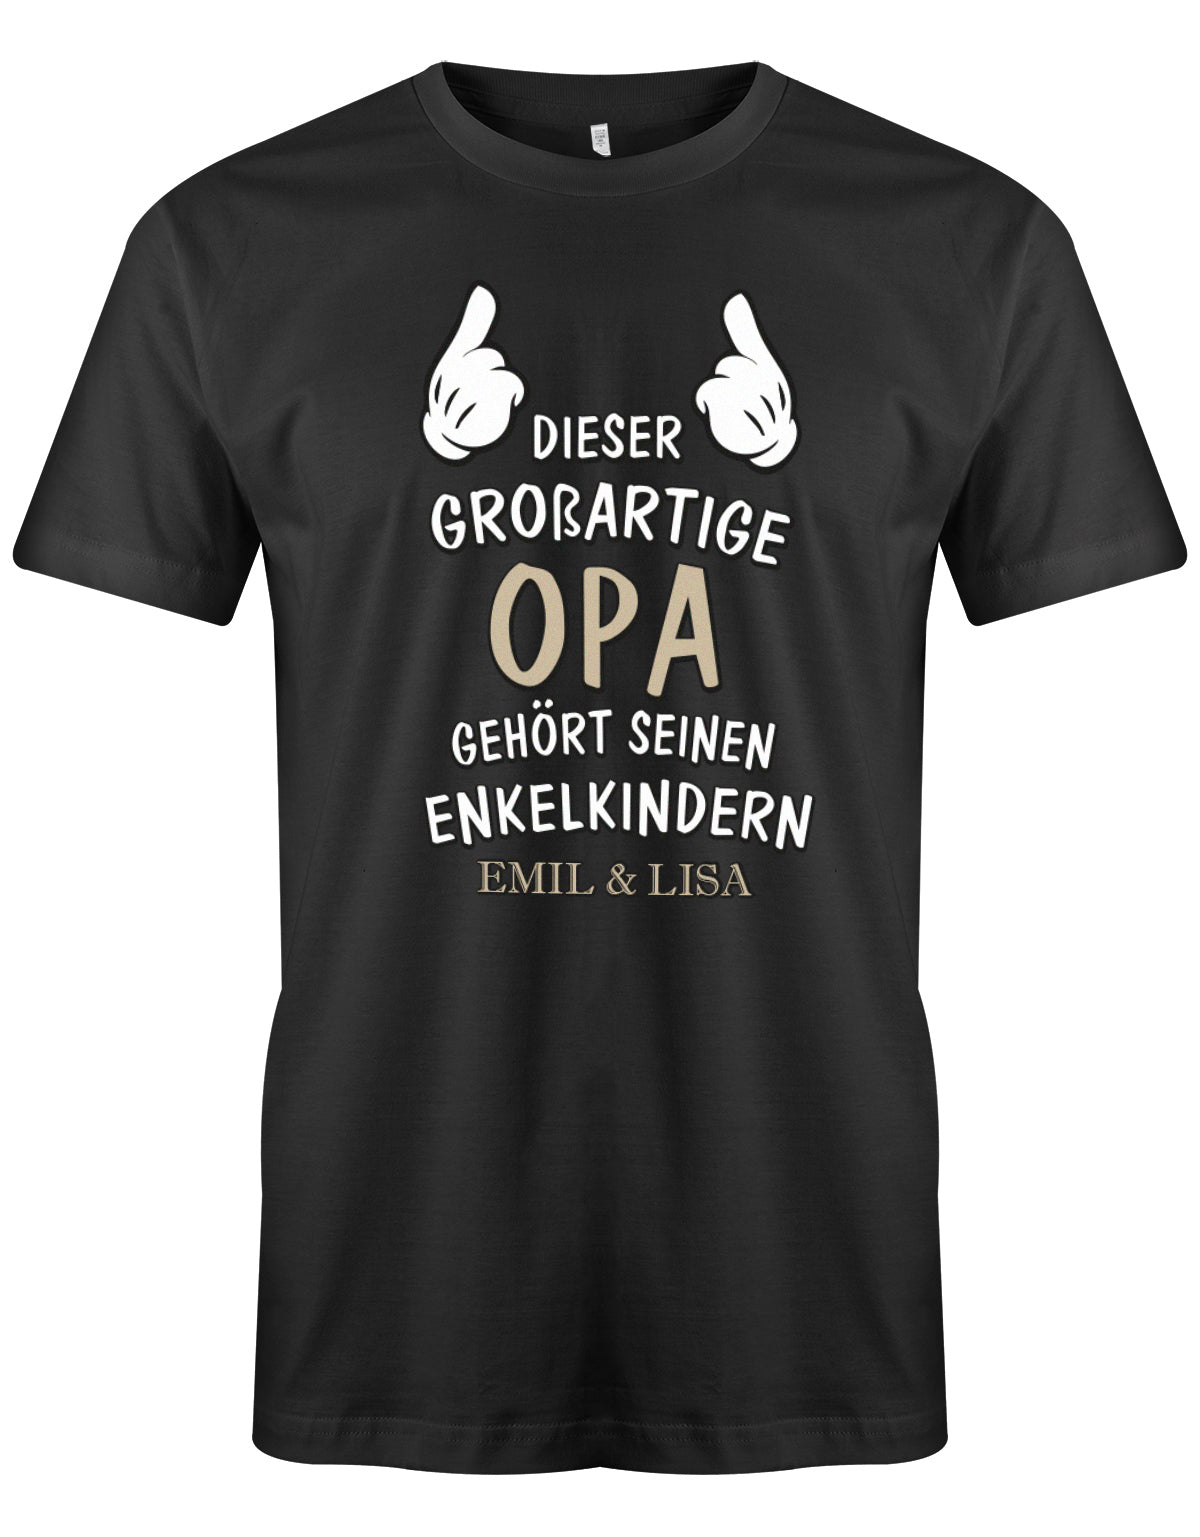 Opa Shirt personalisiert - Dieser großartige Opa gehört seinen Enkelkindern. Mit Namen der Enkel. Schwarz